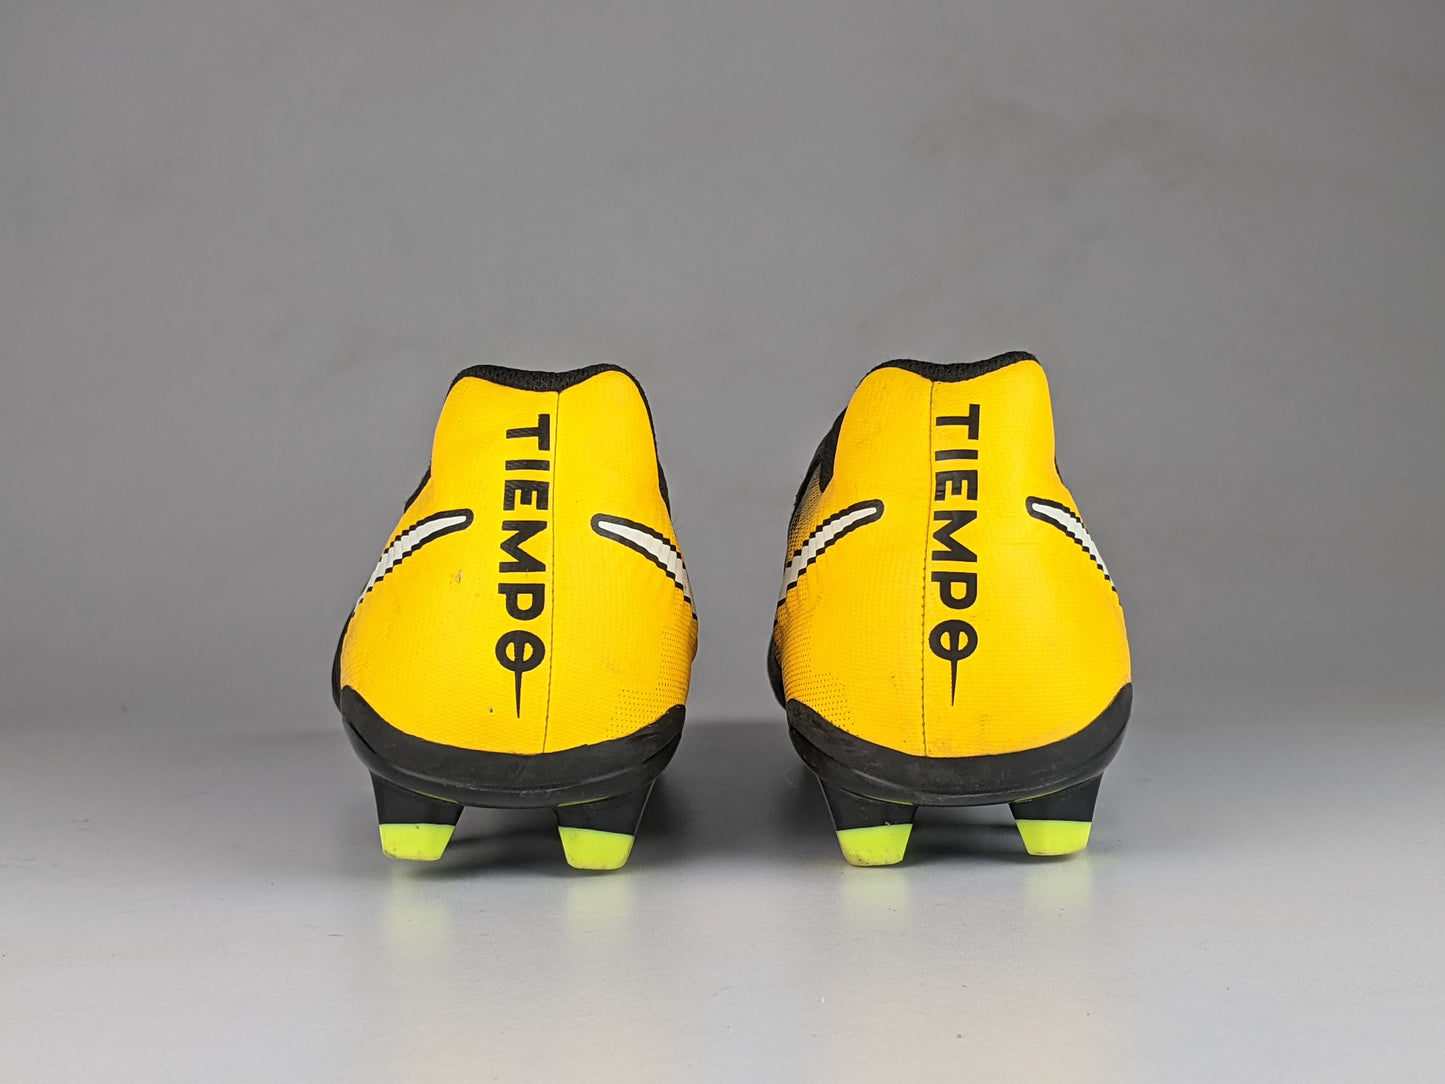 Nike Tiempo Ligera IV FG 'Black/Yellow